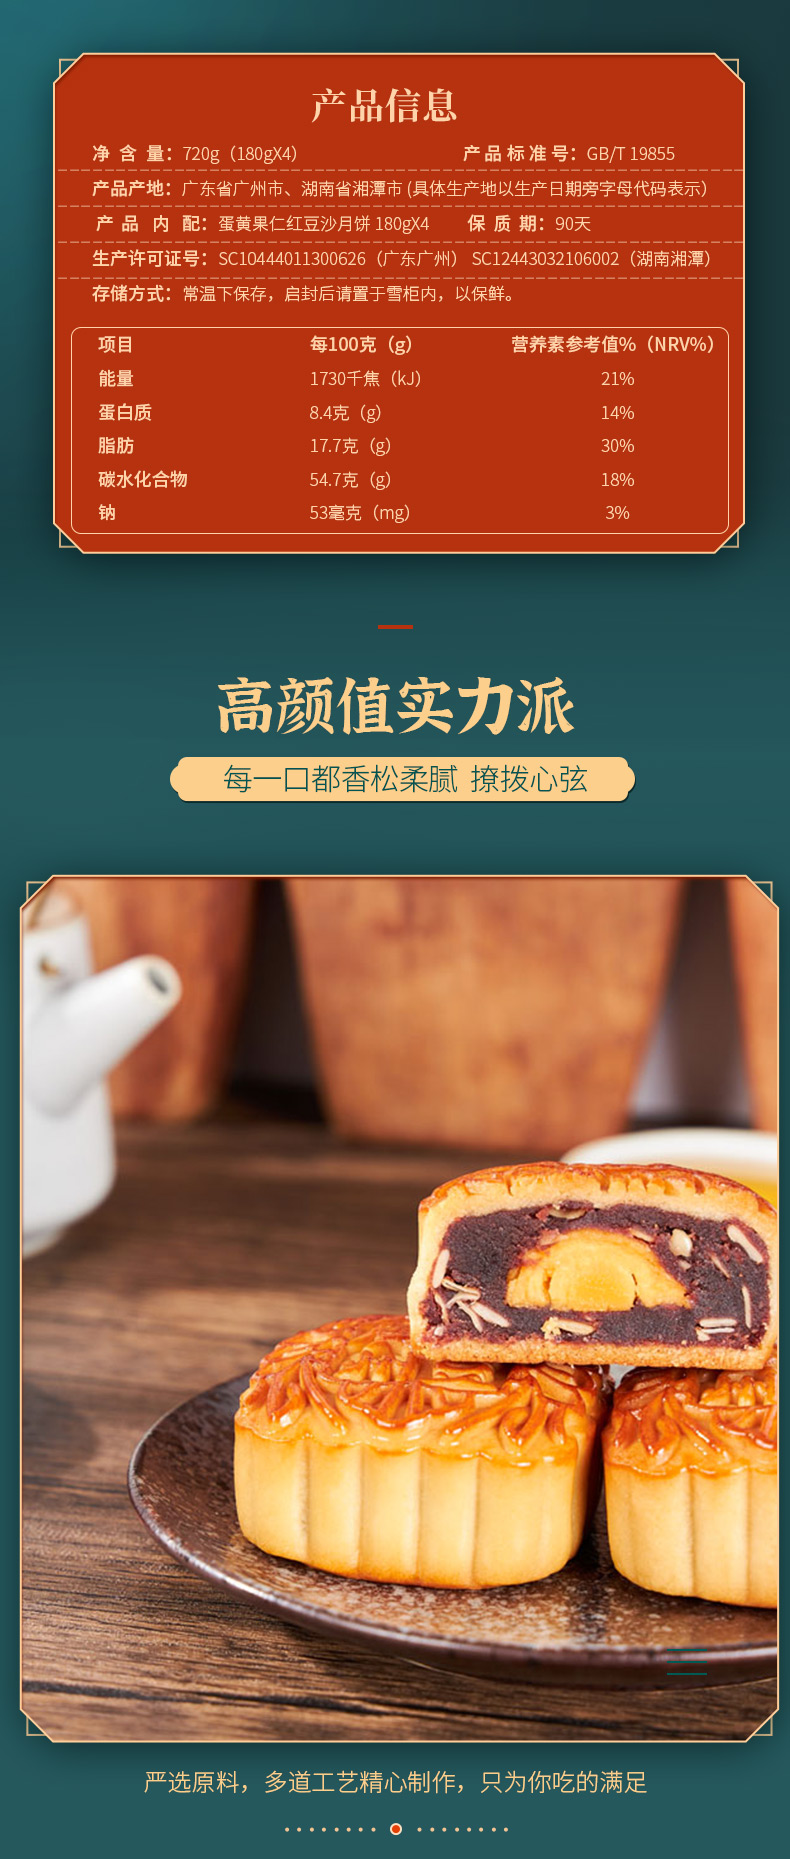 广式月饼团购 广州酒家蛋黄果仁红豆沙月饼 批发更优惠